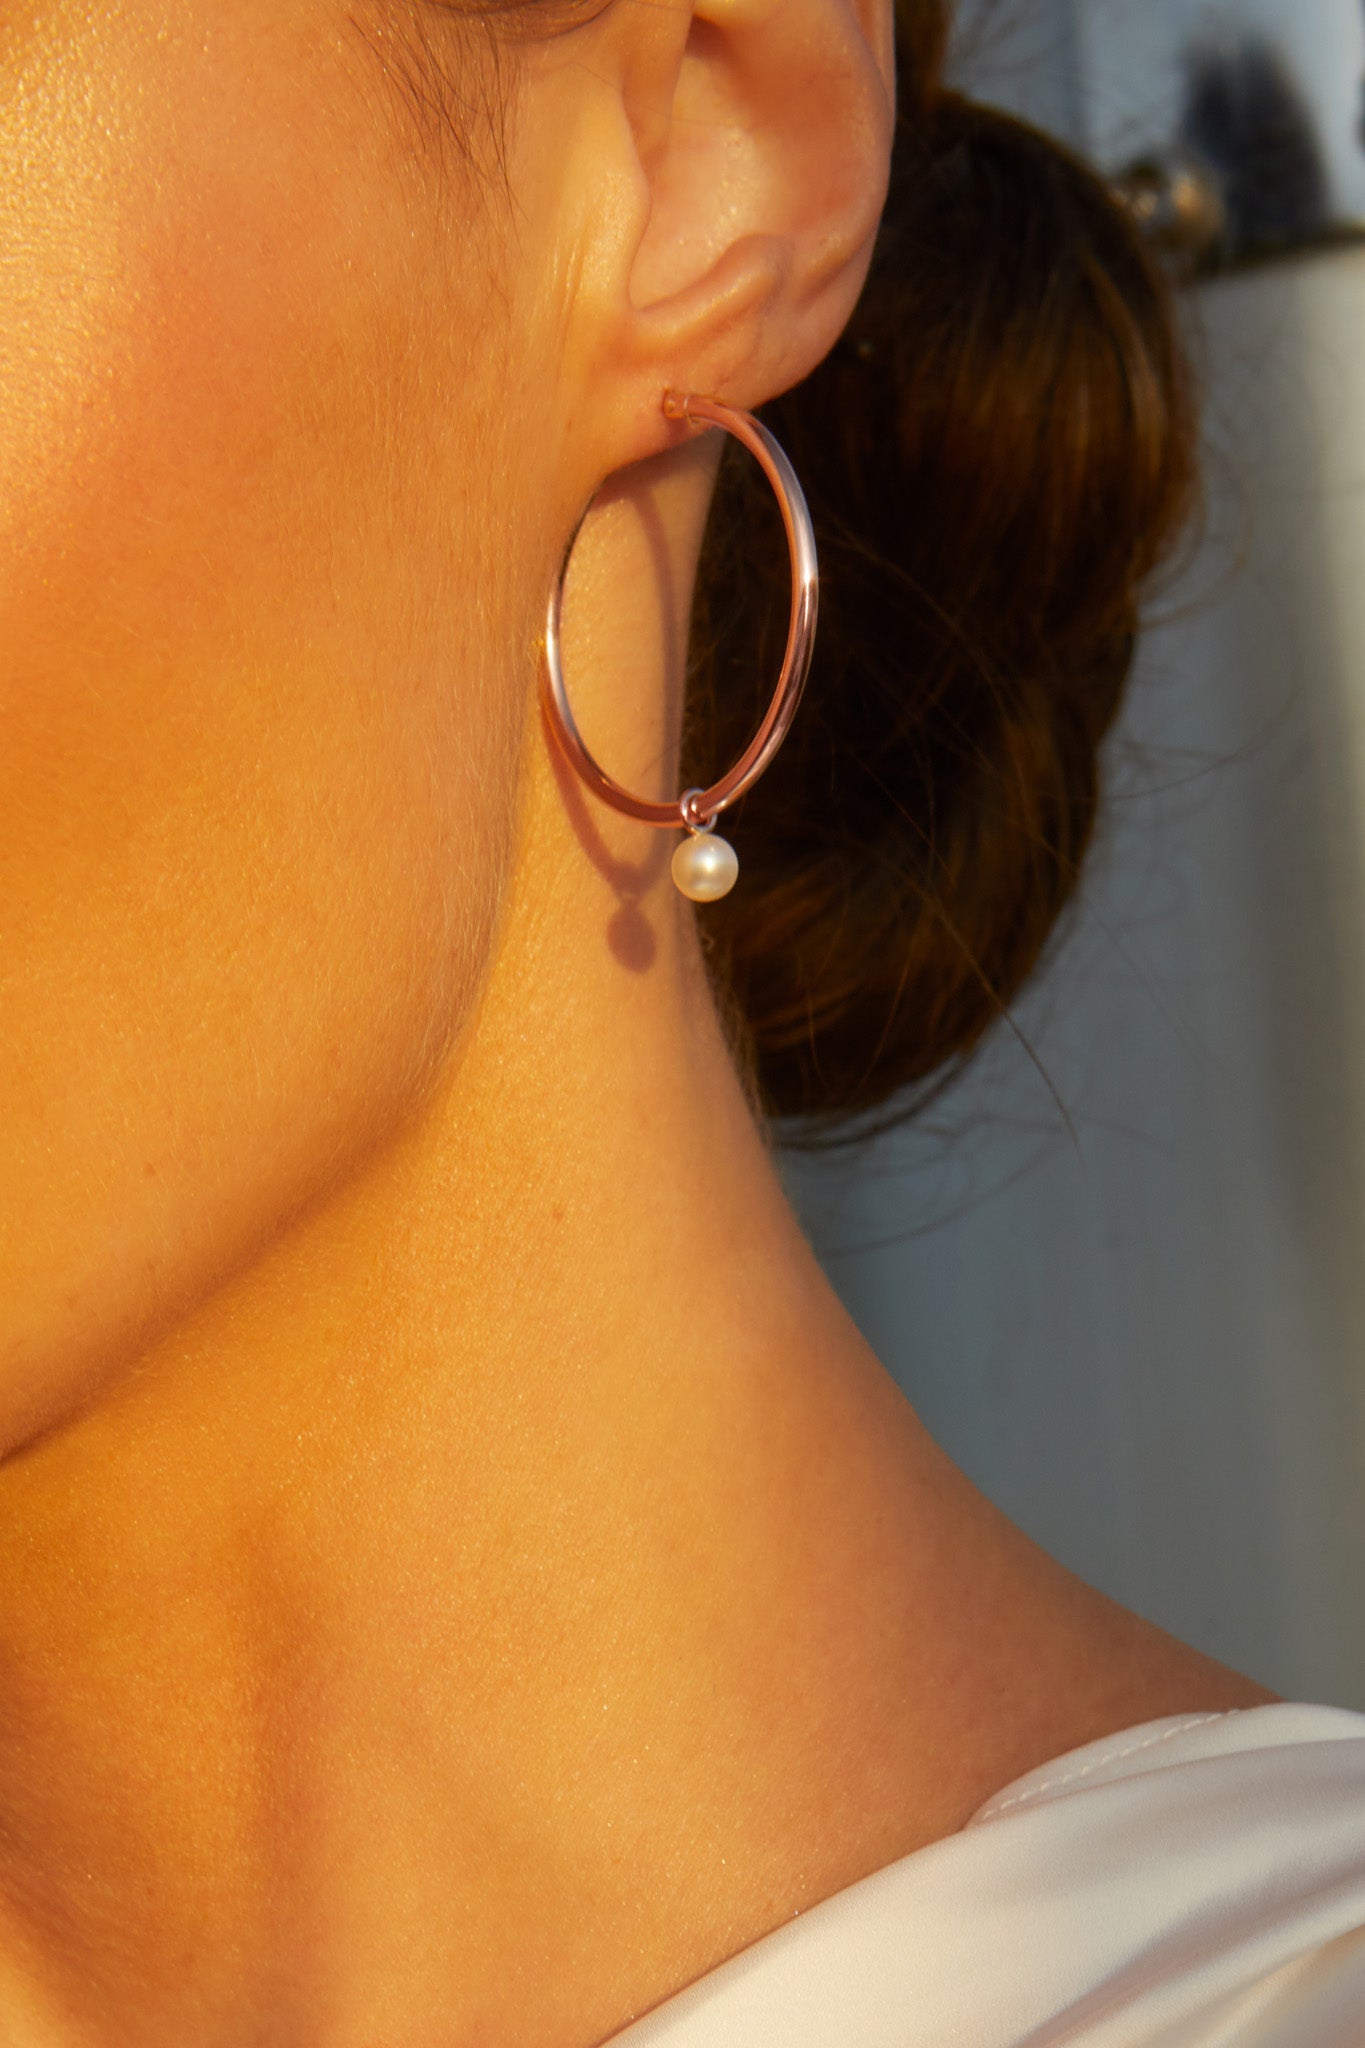 Chantilly Pearl Hoop Earrings in 9ct Rose Gold